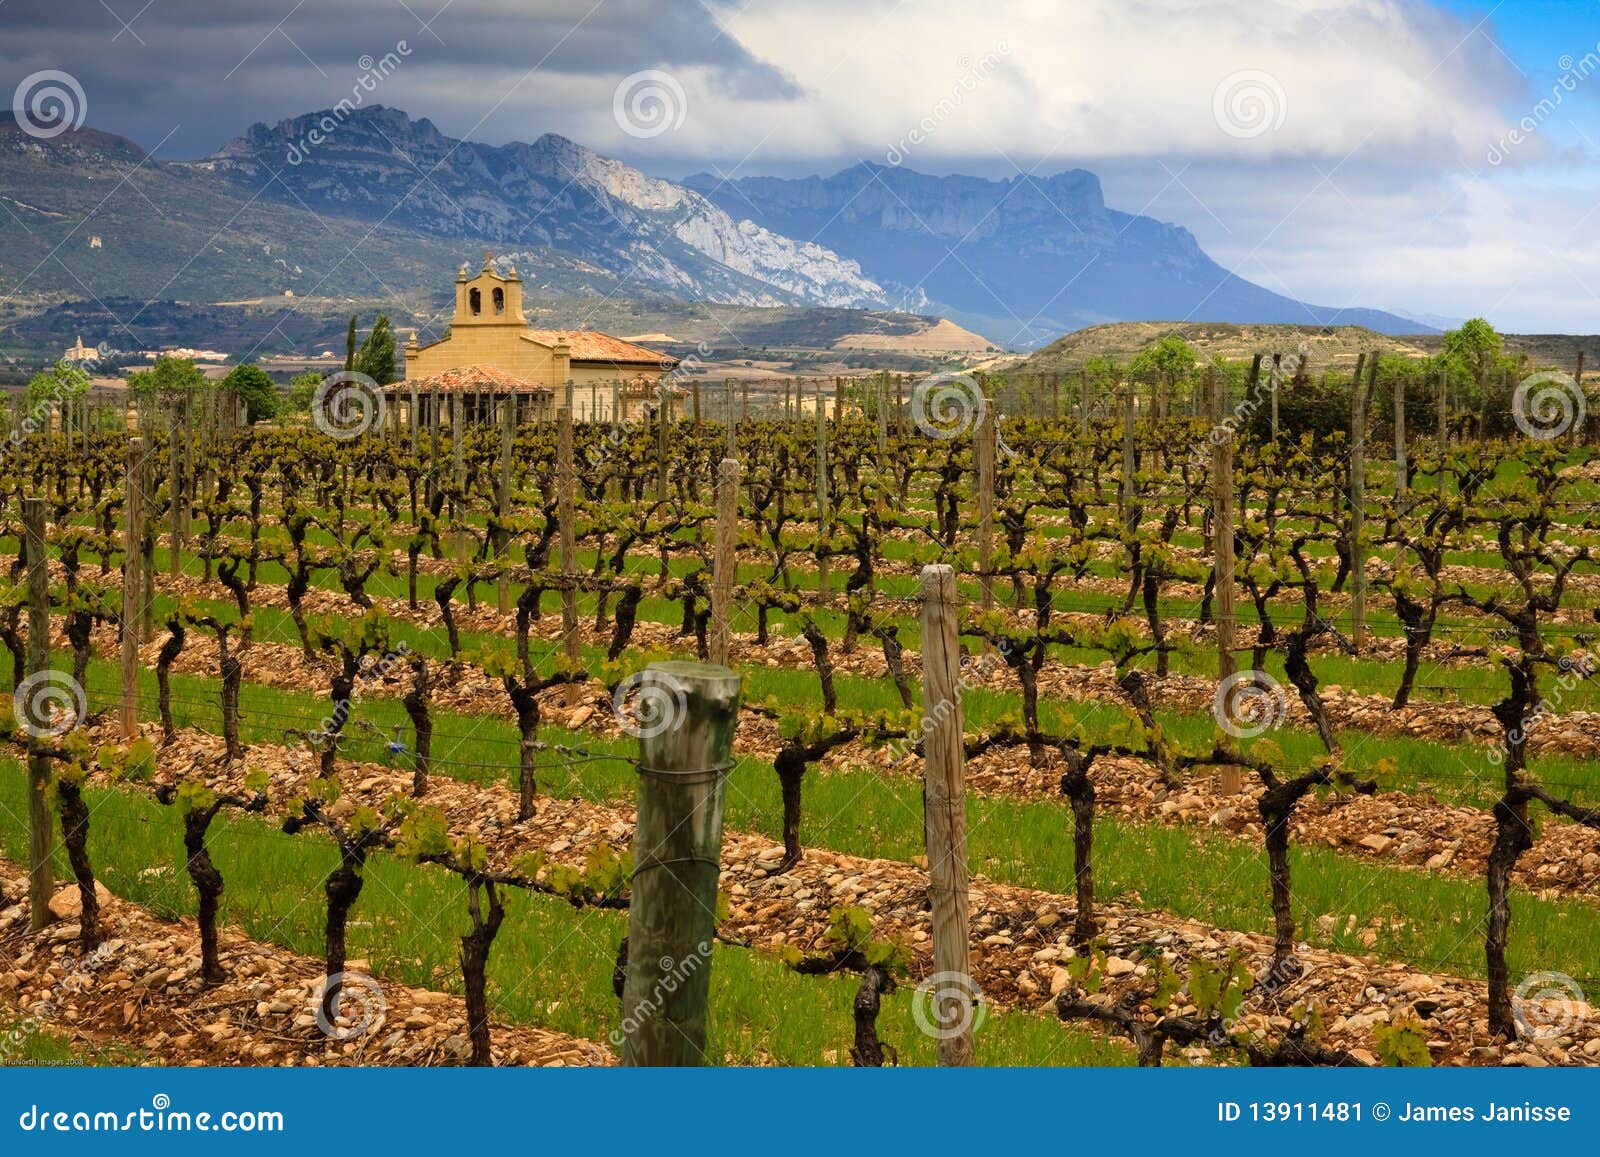 rioja winery